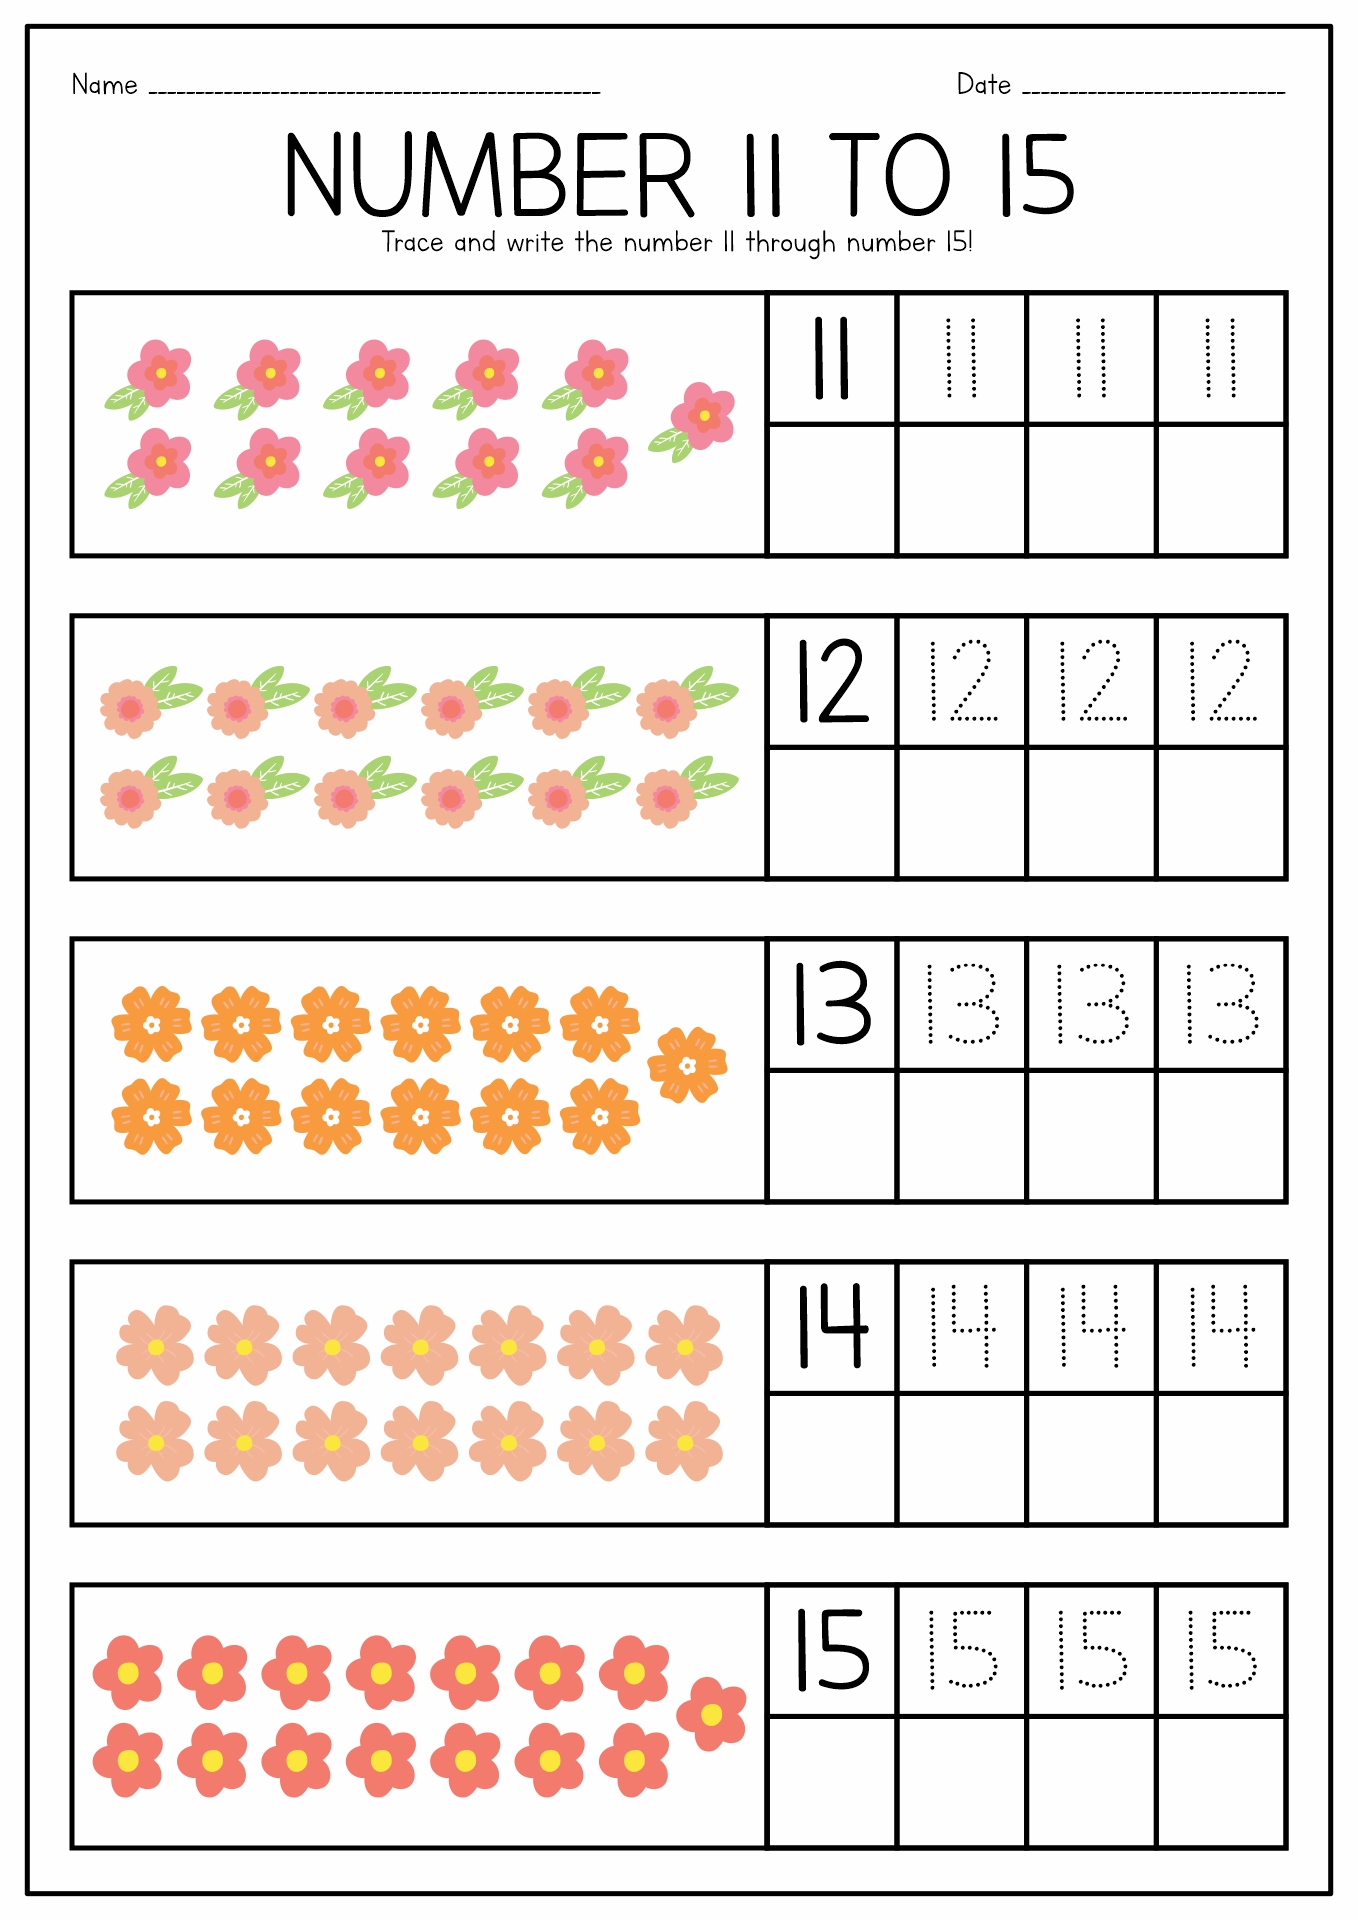 Preschool Number Worksheets 11 15 Image